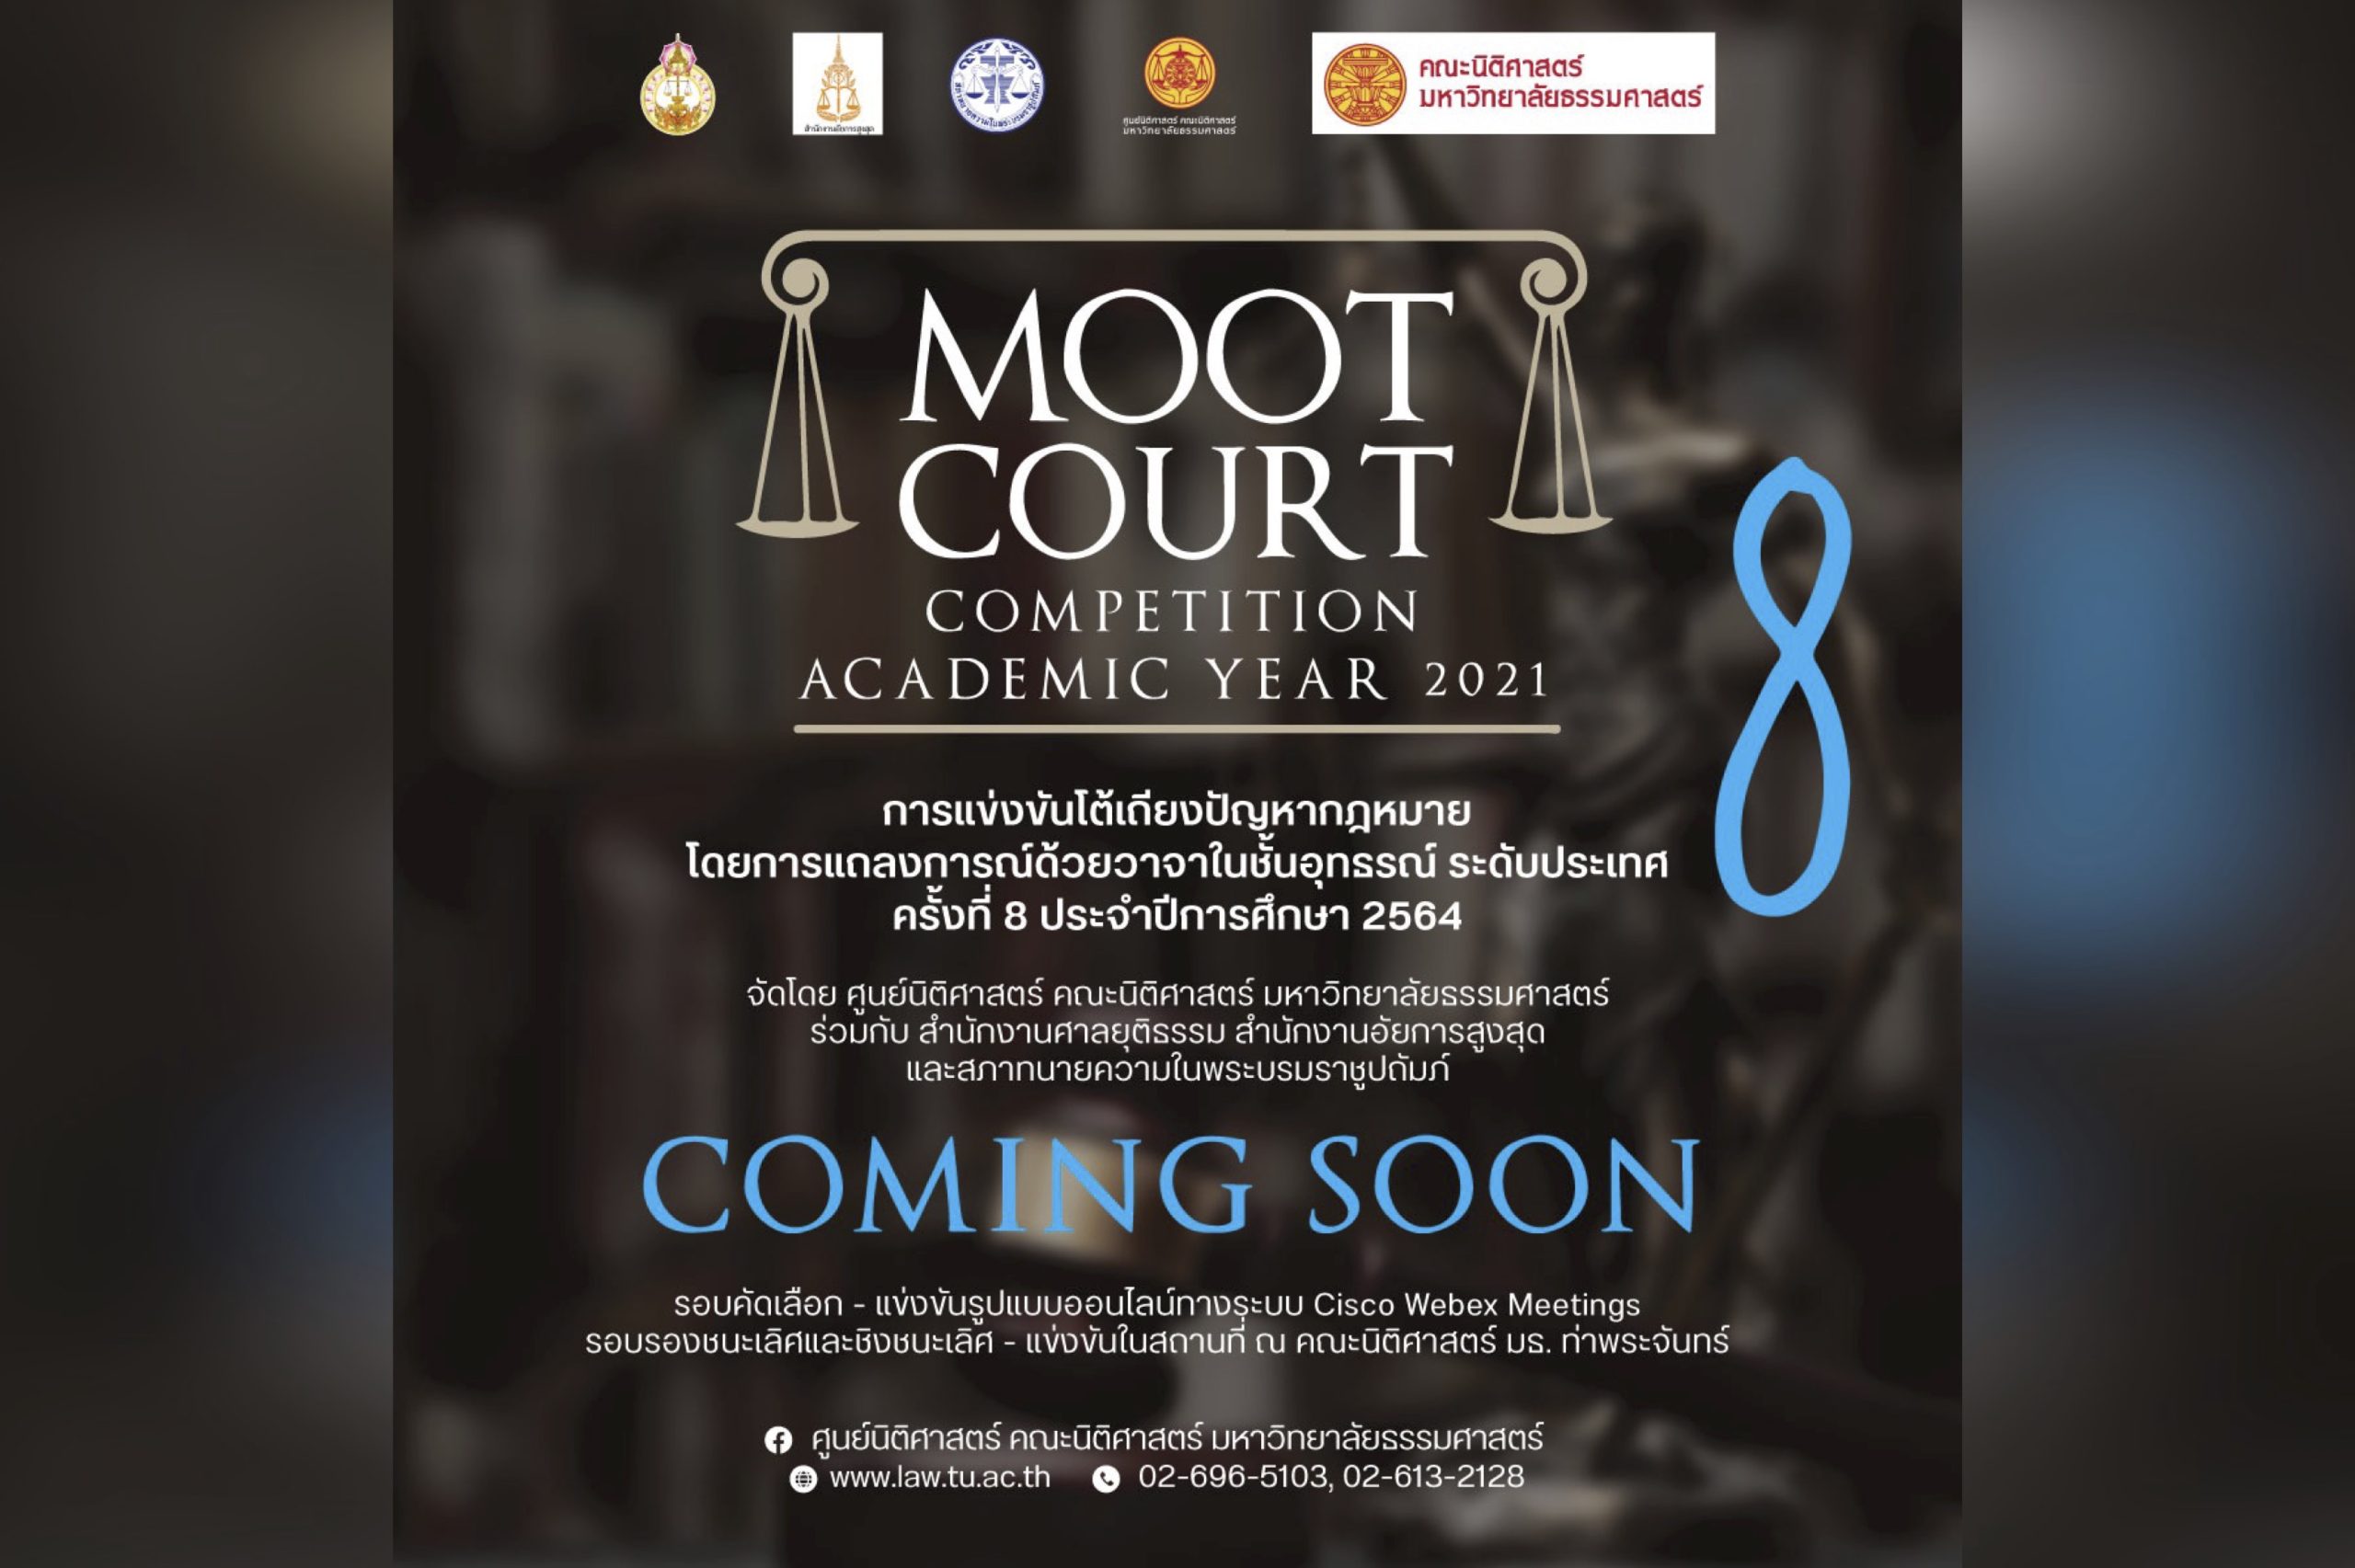 เตรียมพบกับ การแข่งขันโต้เถียงปัญหากฎหมายโดยการแถลงการณ์ด้วยวาจาในชั้นอุทธรณ์ ระดับประเทศ ครั้งที่ 8 ประจำปีการศึกษา 2564 (Moot Court Competition Academic Year 2021) เร็ว ๆ นี้